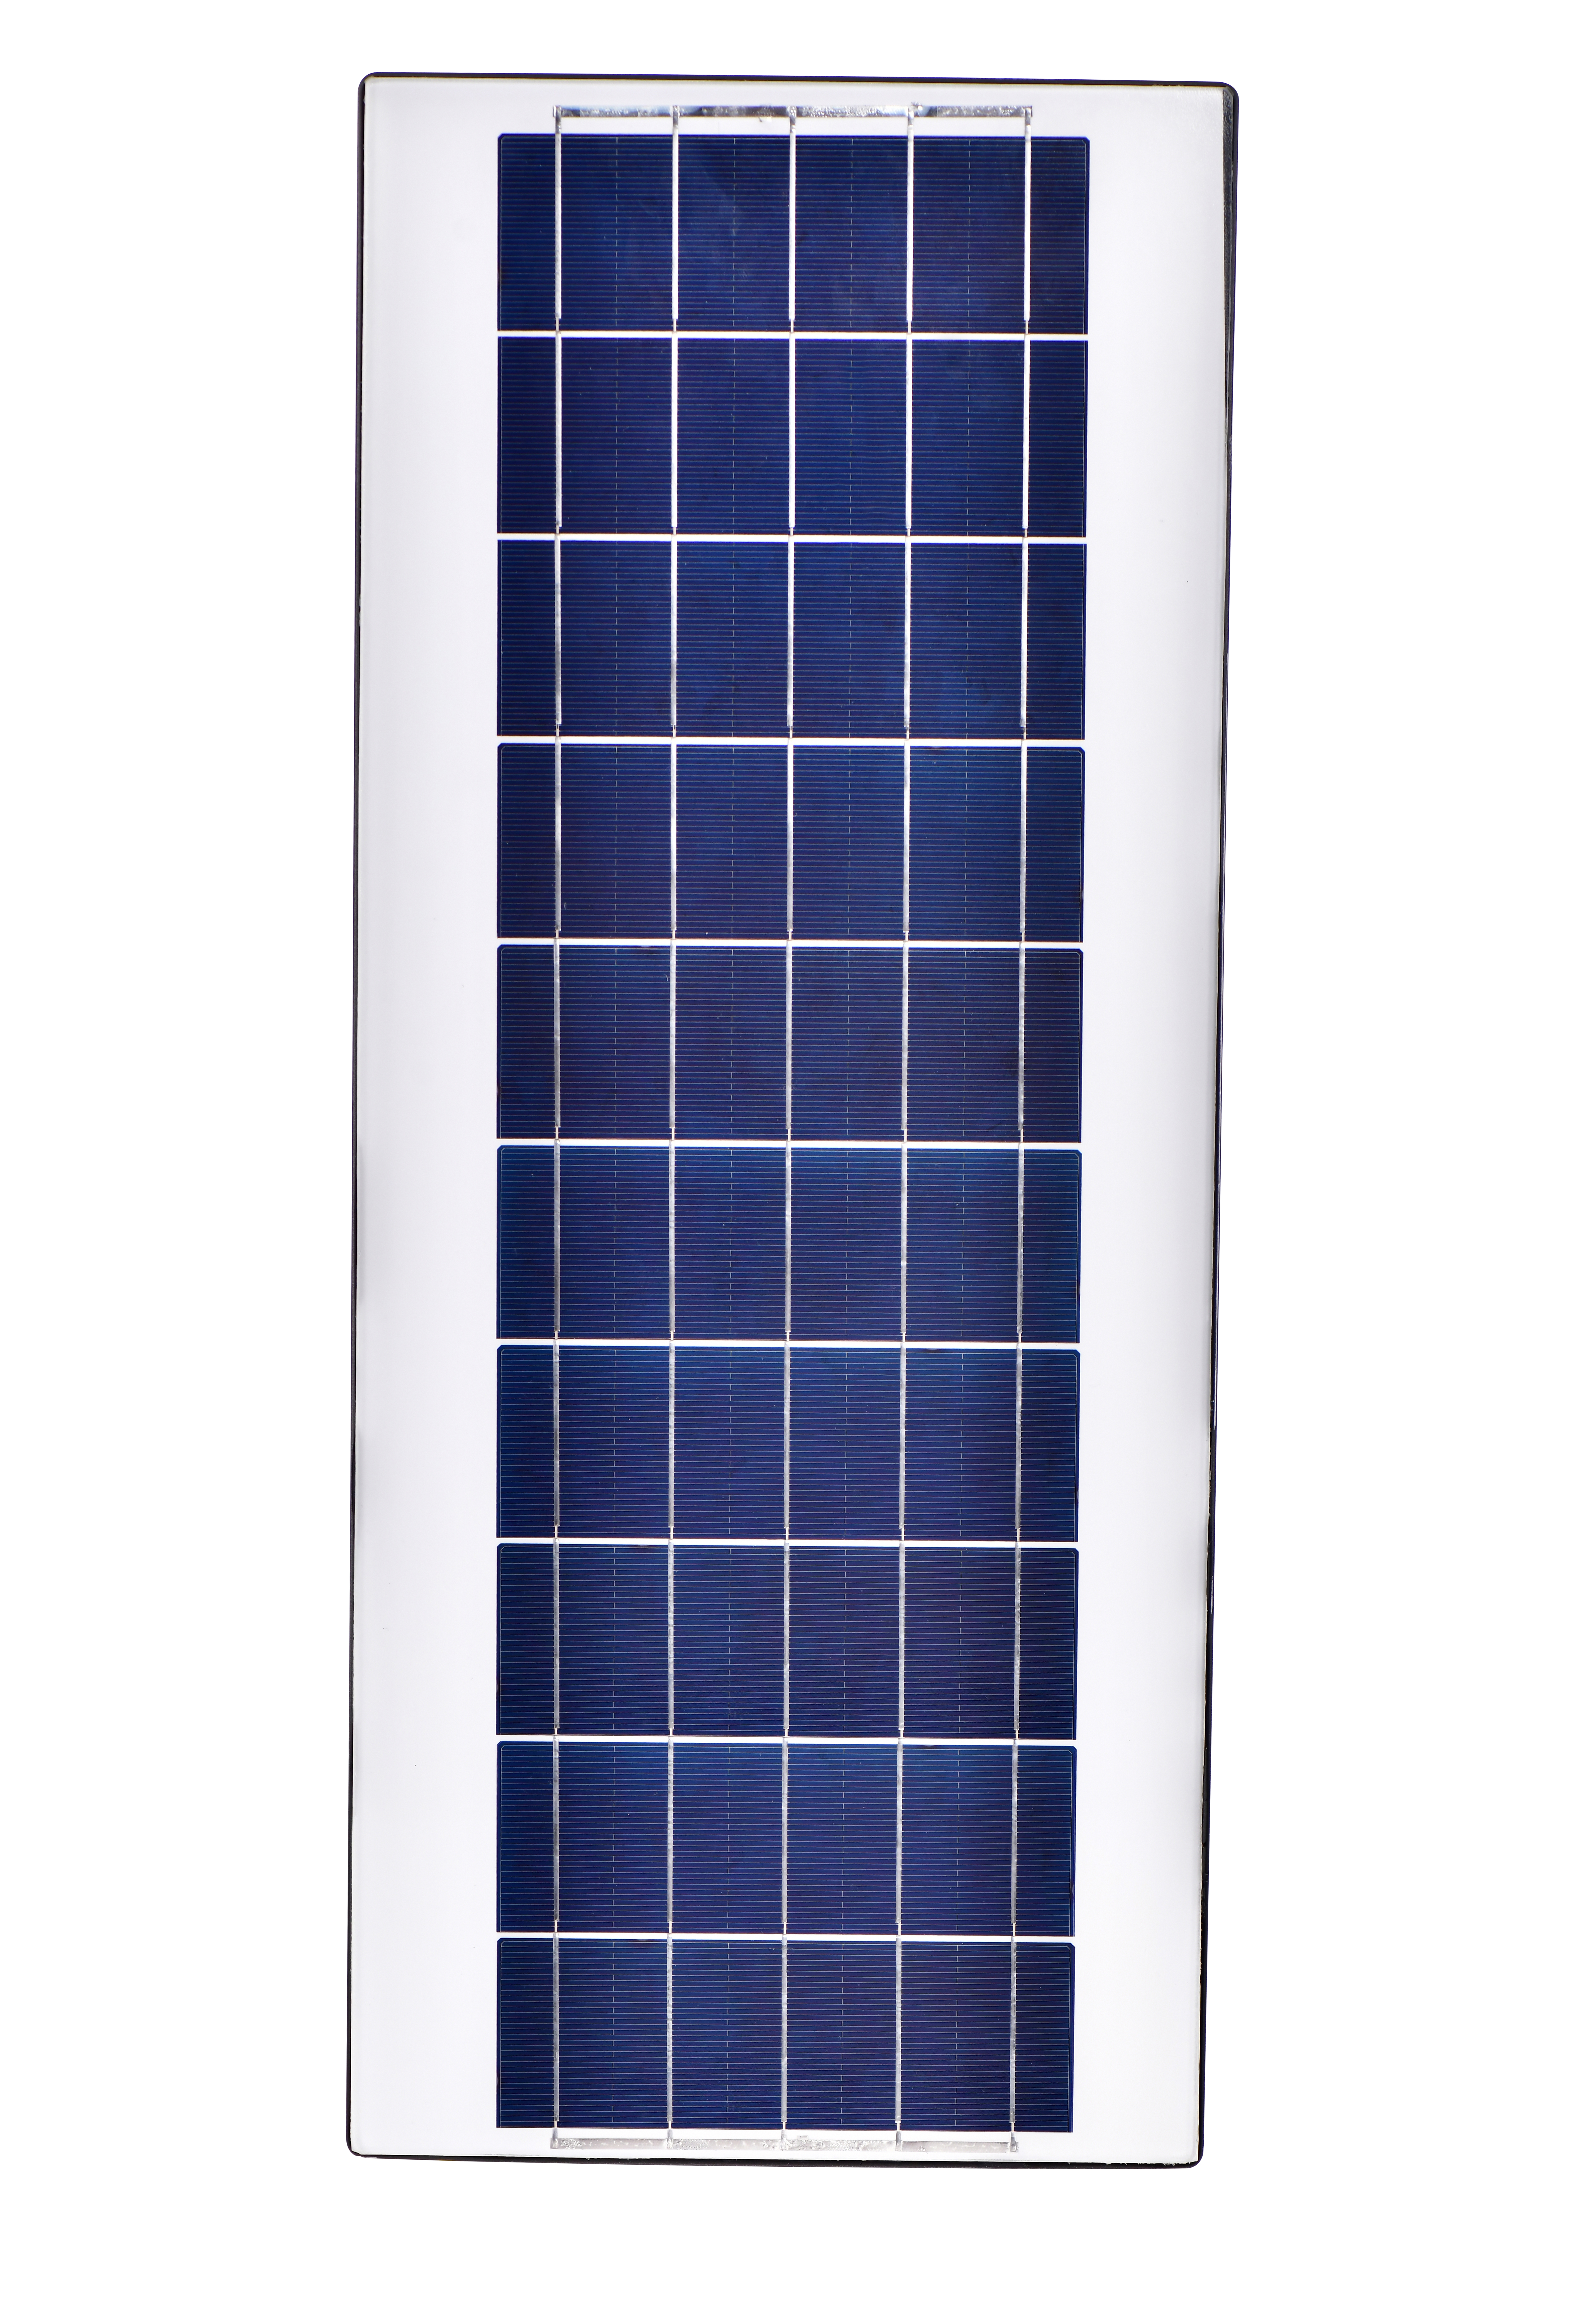 شراء صفائح معدنية متكاملة لإنارة الشوارع بالطاقة الشمسية ,صفائح معدنية متكاملة لإنارة الشوارع بالطاقة الشمسية الأسعار ·صفائح معدنية متكاملة لإنارة الشوارع بالطاقة الشمسية العلامات التجارية ,صفائح معدنية متكاملة لإنارة الشوارع بالطاقة الشمسية الصانع ,صفائح معدنية متكاملة لإنارة الشوارع بالطاقة الشمسية اقتباس ·صفائح معدنية متكاملة لإنارة الشوارع بالطاقة الشمسية الشركة